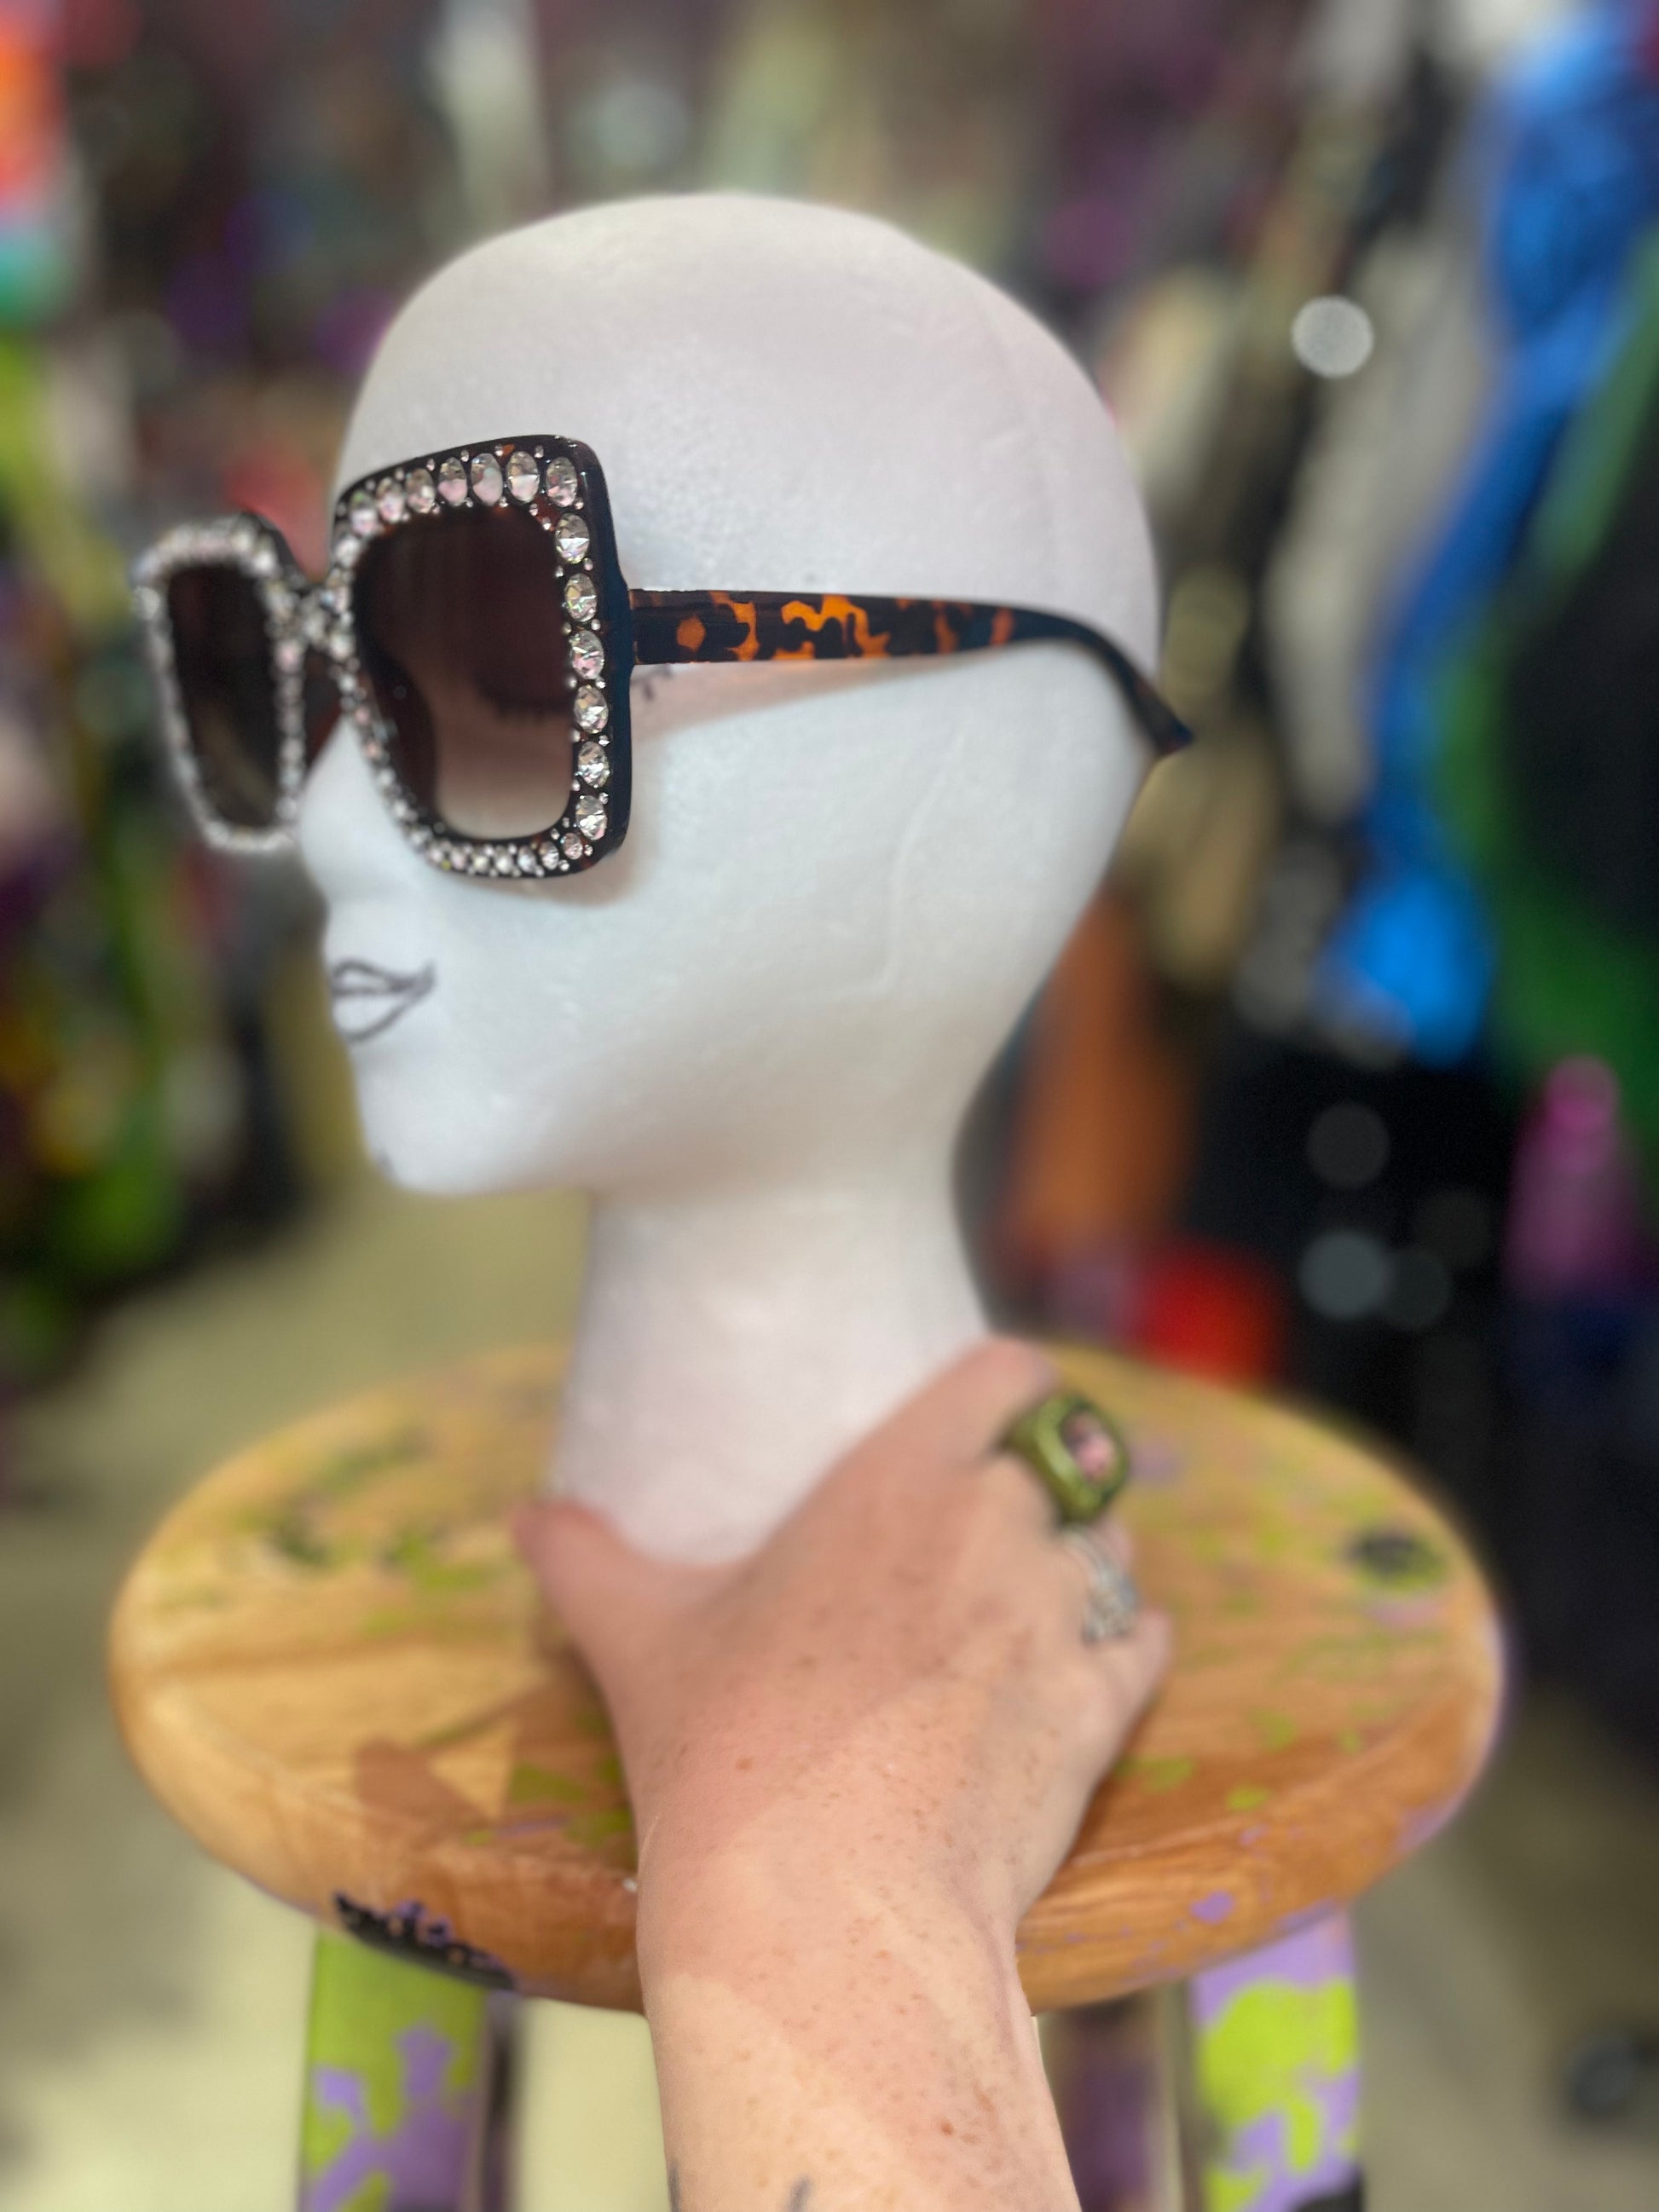 Square Rhinestone Glam Sunglasses - Spark Pretty